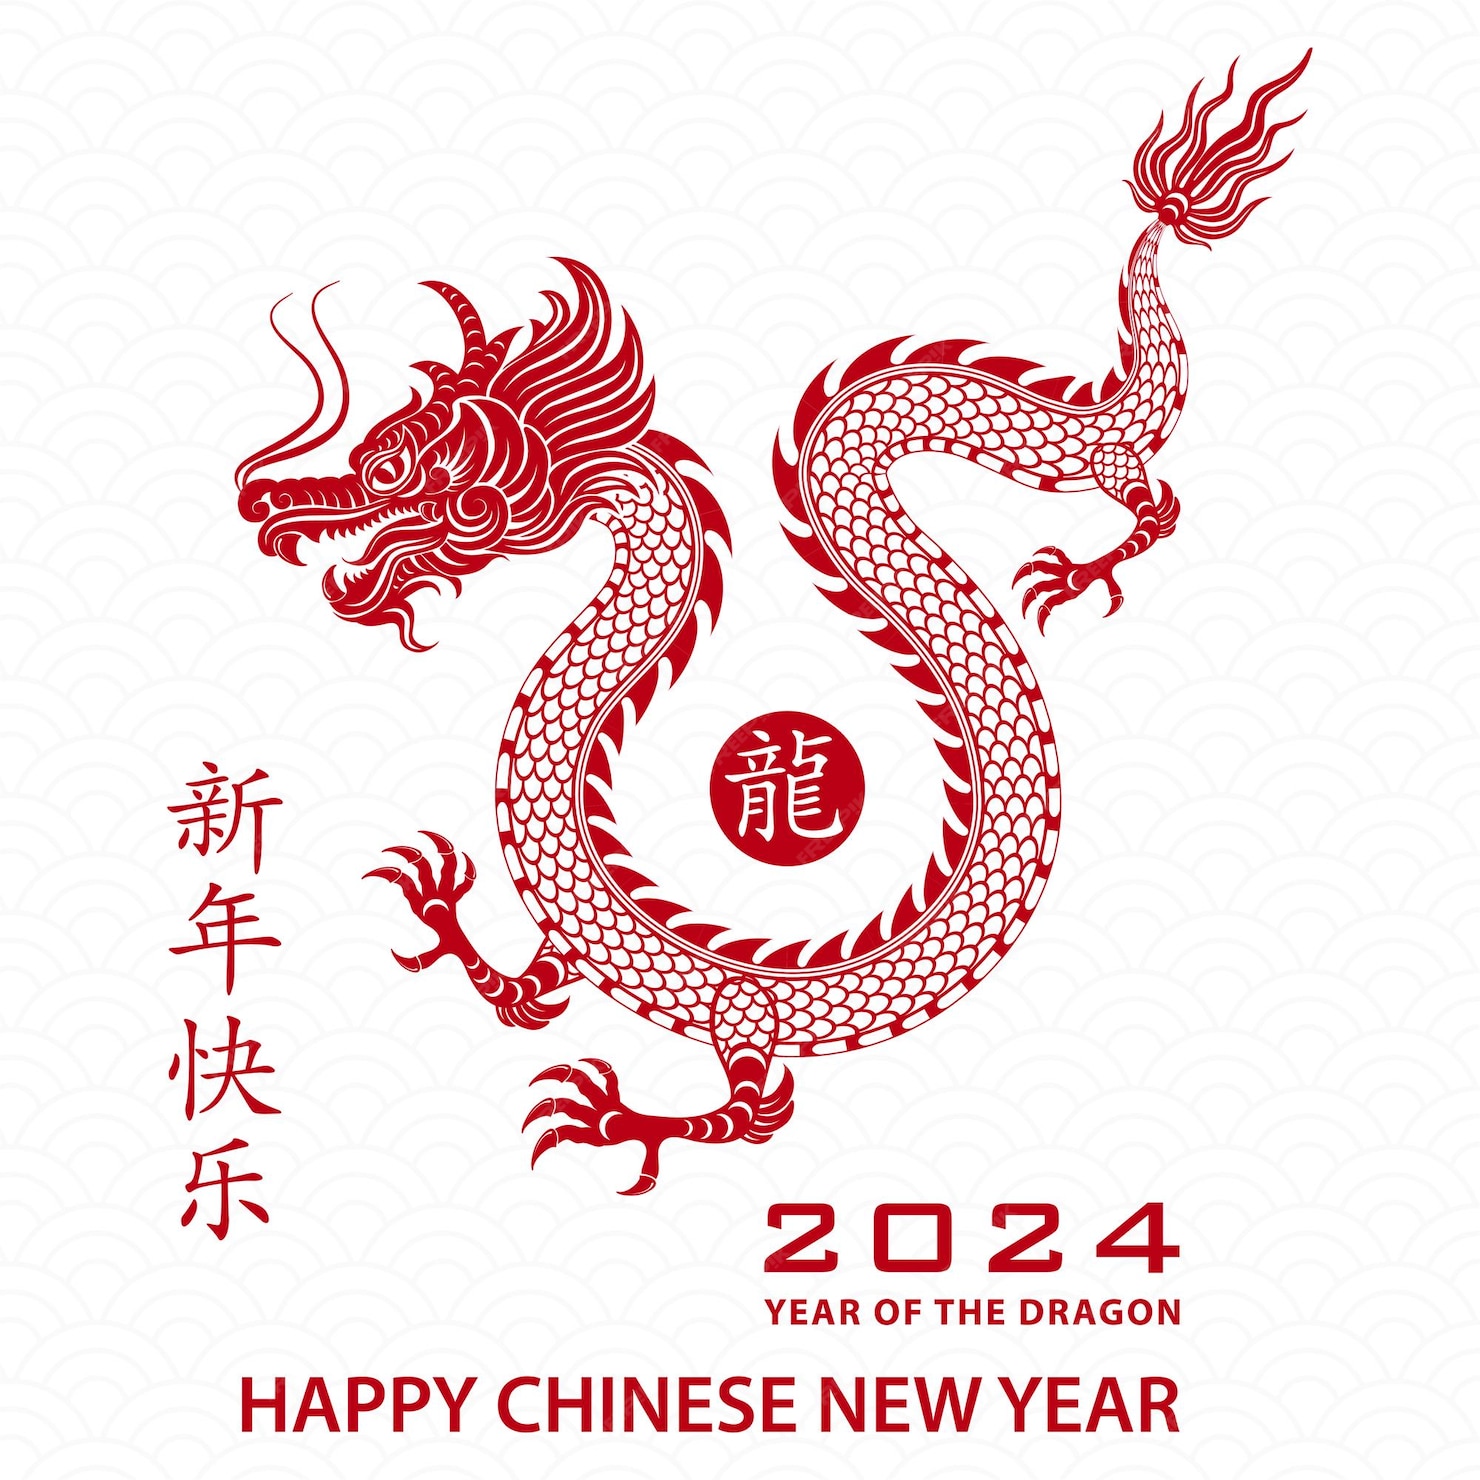 Feliz año nuevo chino 2024 signo del zodiaco para el año del dragón